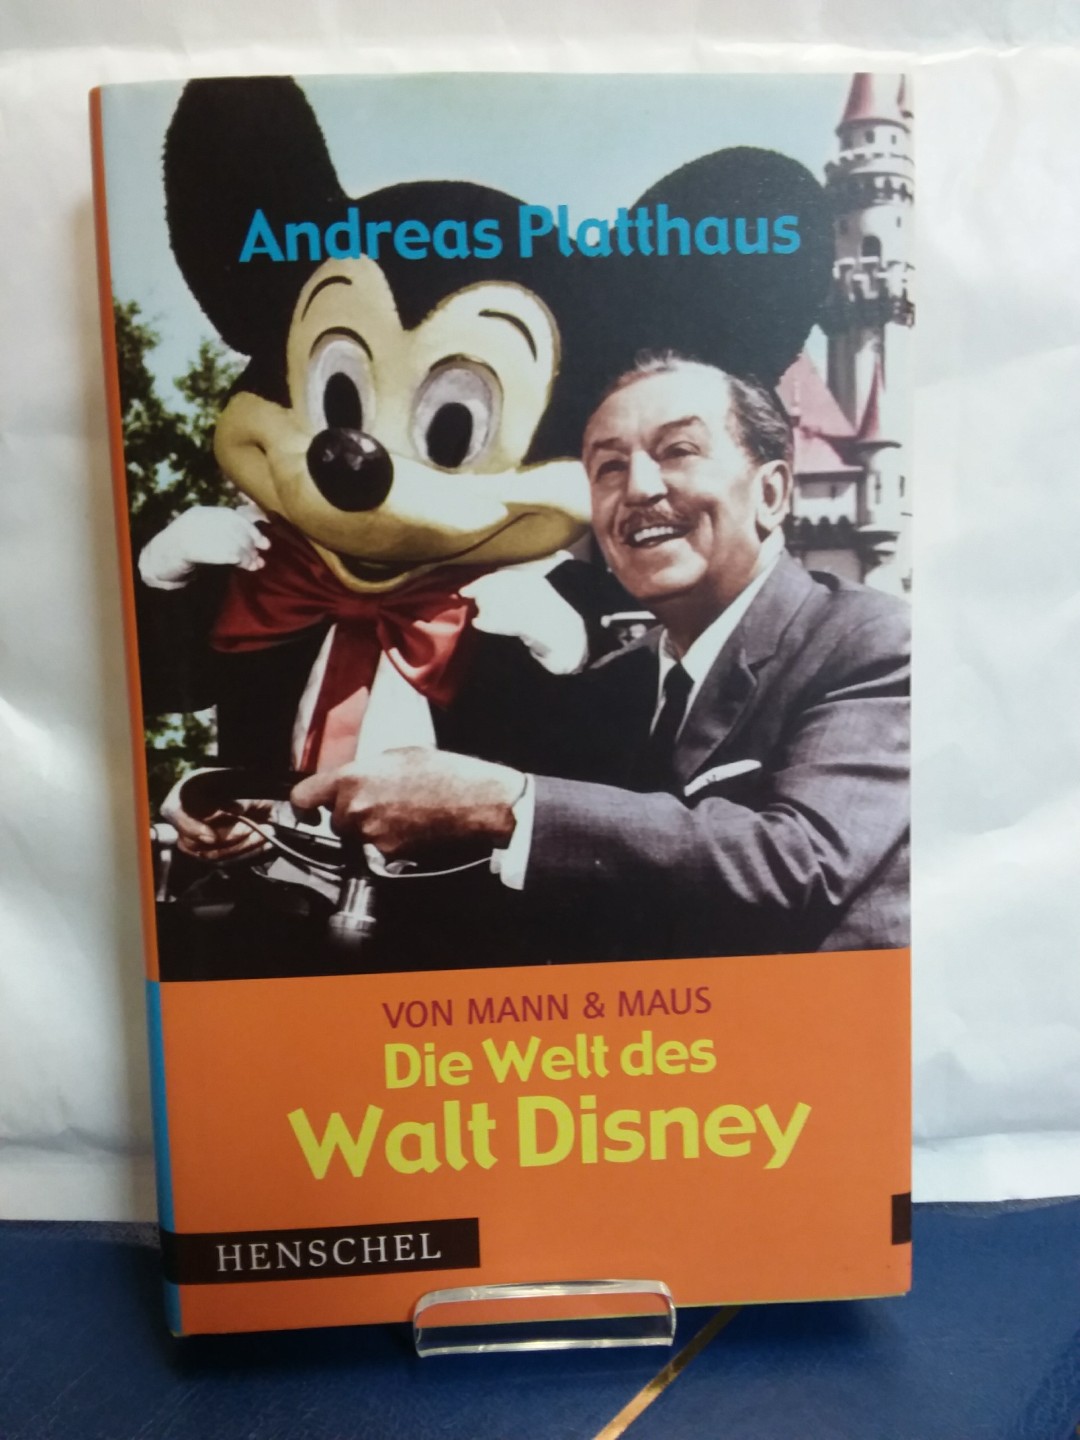 Von Mann & Maus: Die Welt des Walt Disney - Platthaus, Andreas